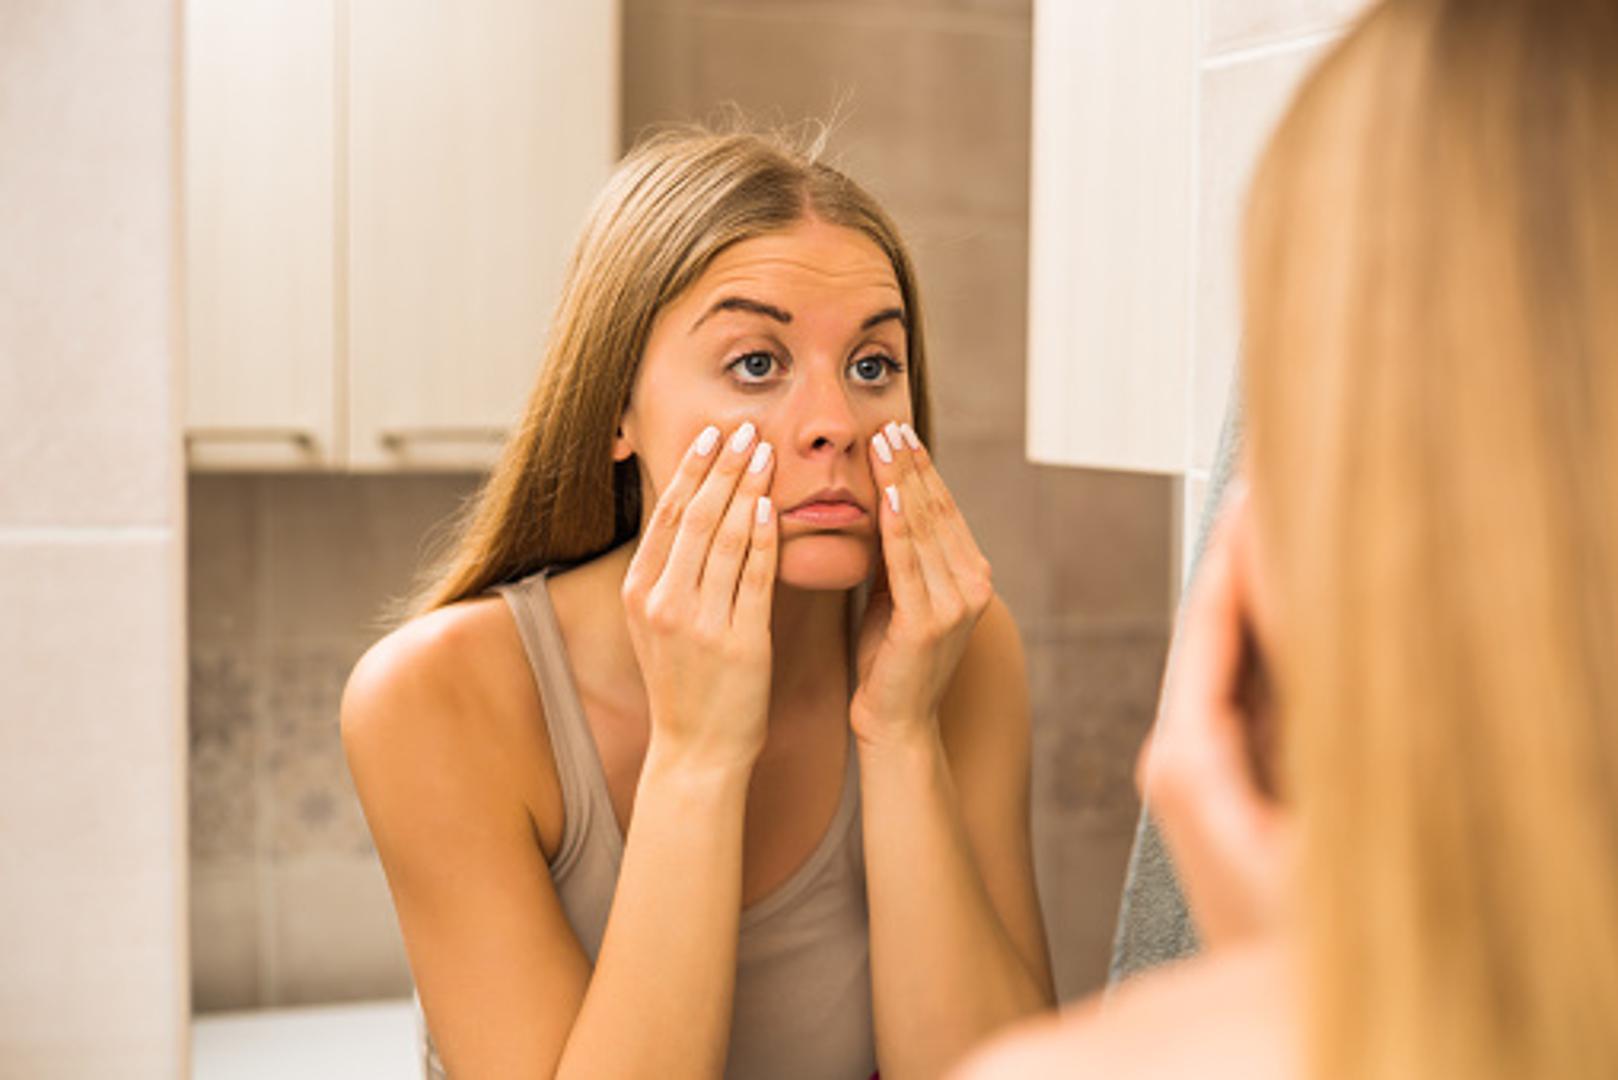 Birajte kvalitetne odstranjivače make up-a. Nije svejedno što nanosite na kožu, a koža oko očiju je posebno osjetljiva pa birajte manje agresivna sredstva za to područje. 